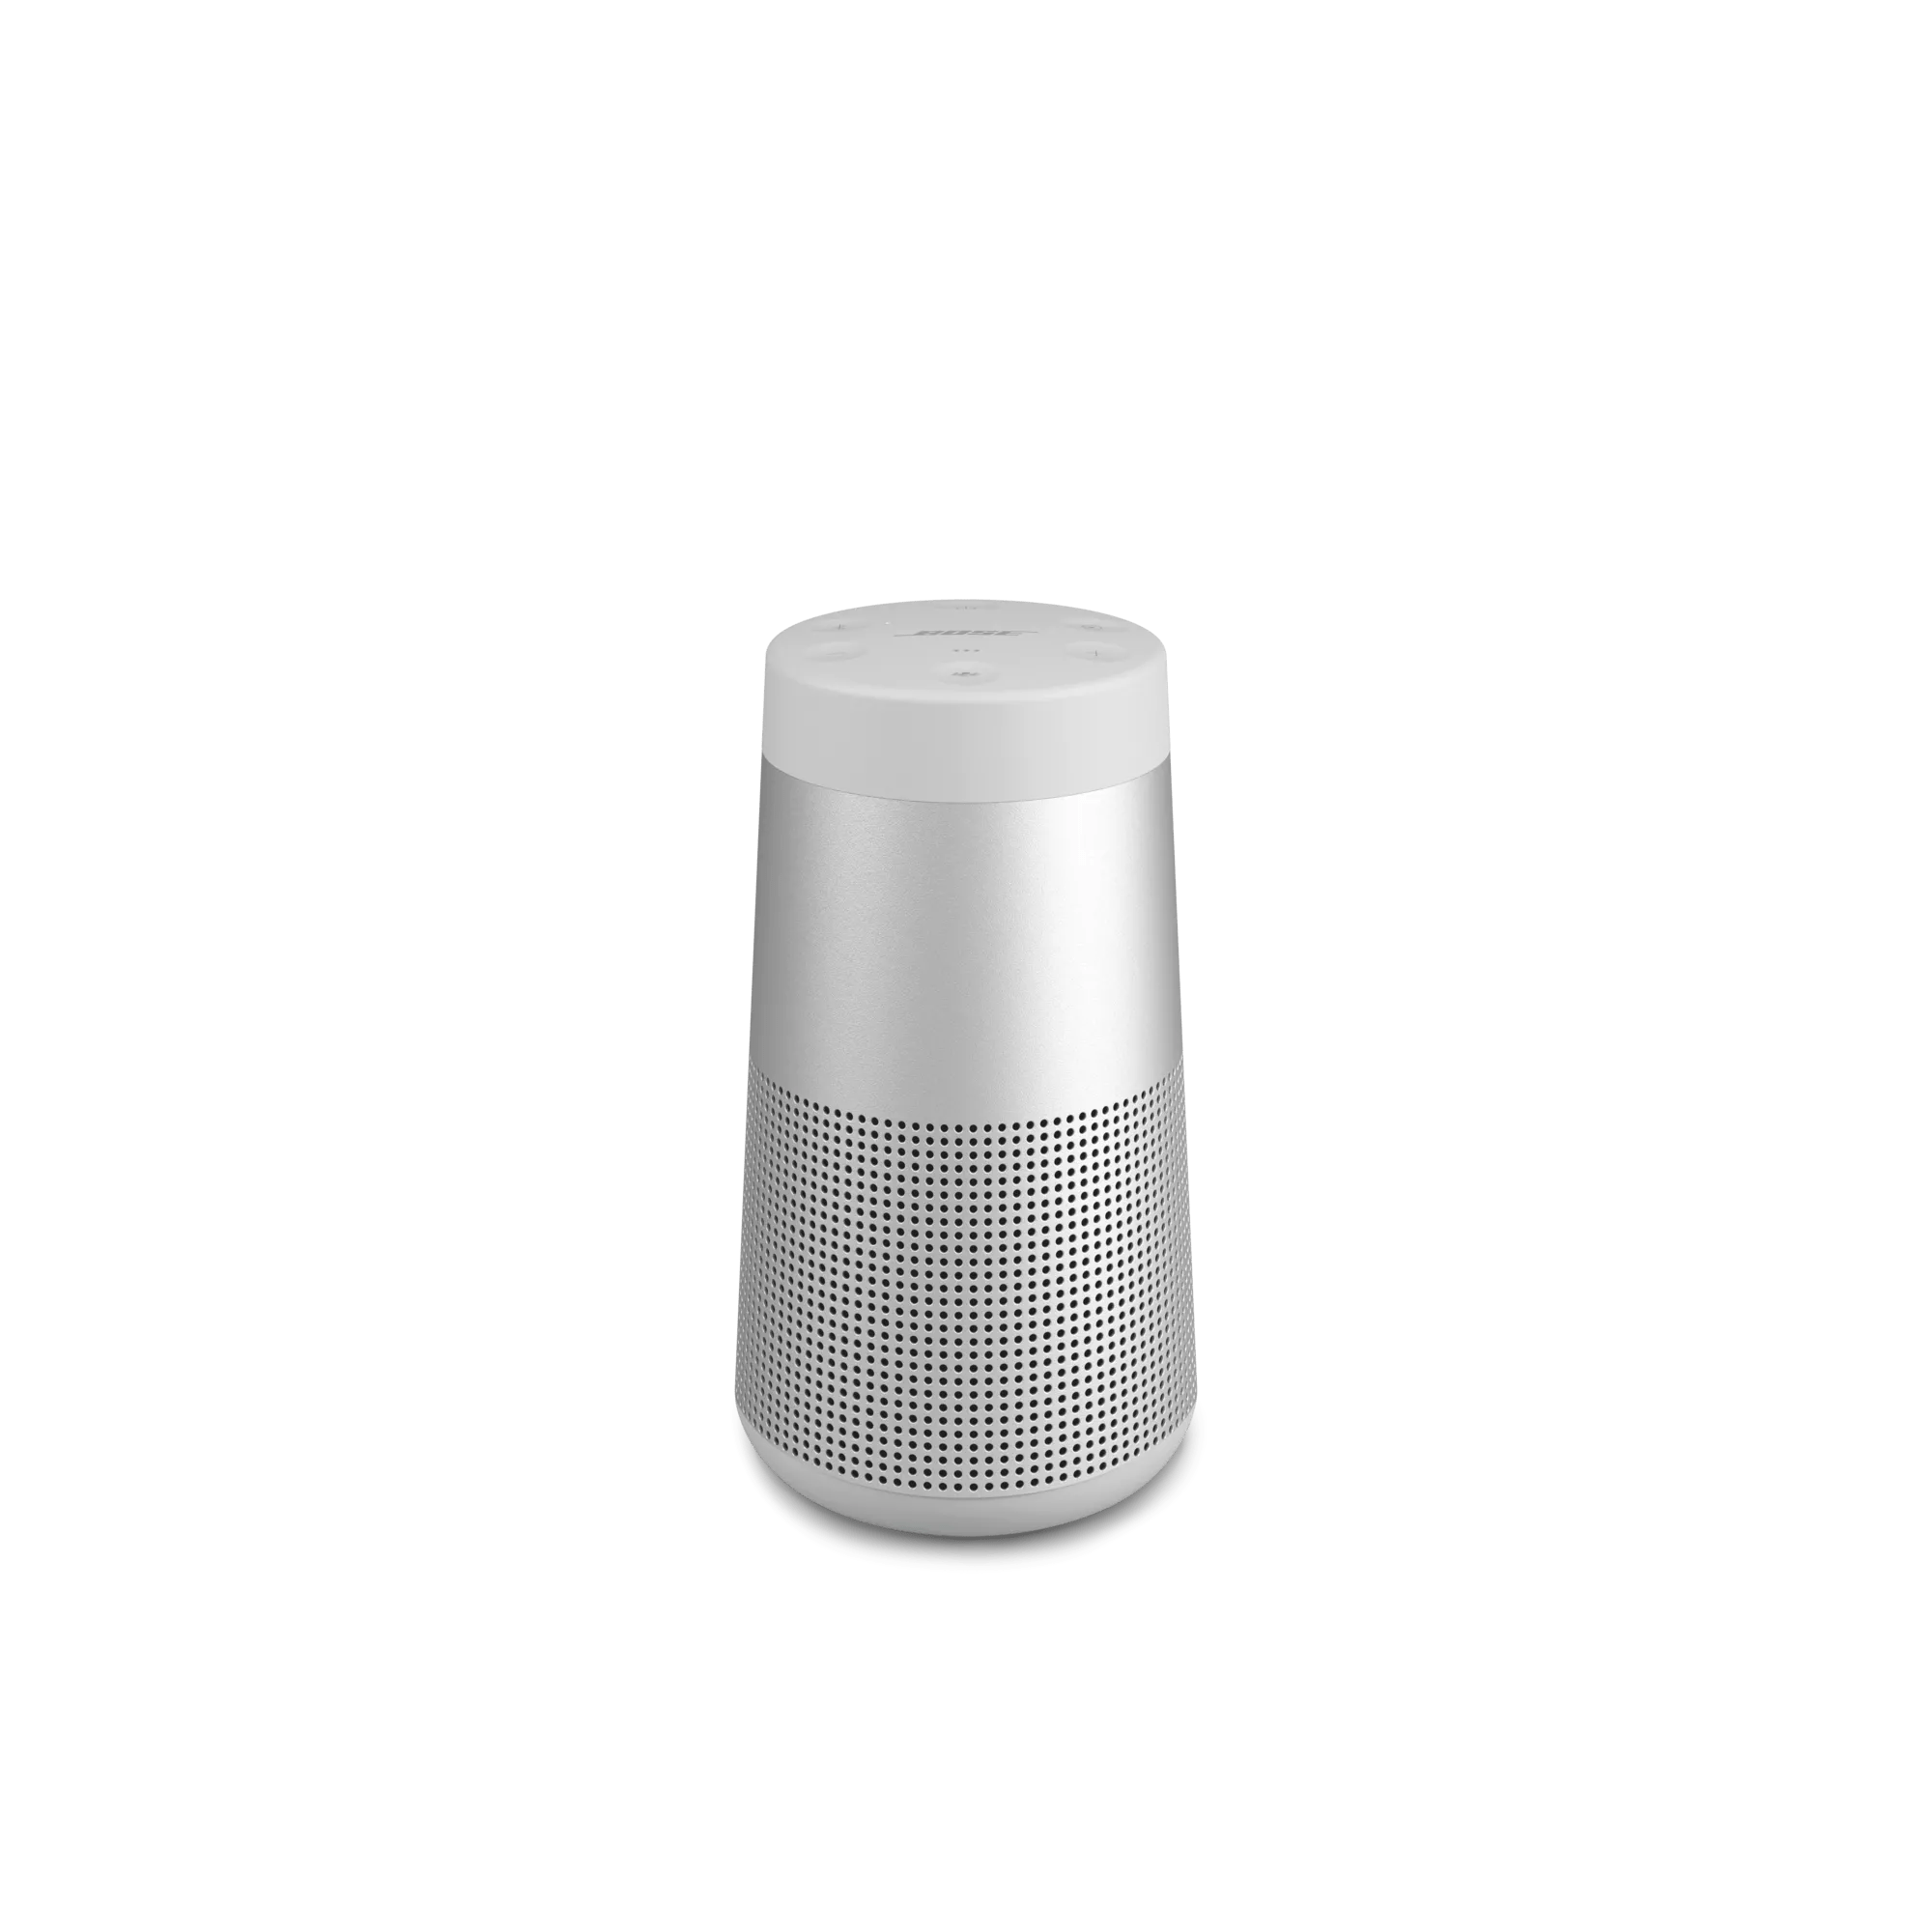 SoundLink Revolve Bluetooth Speaker